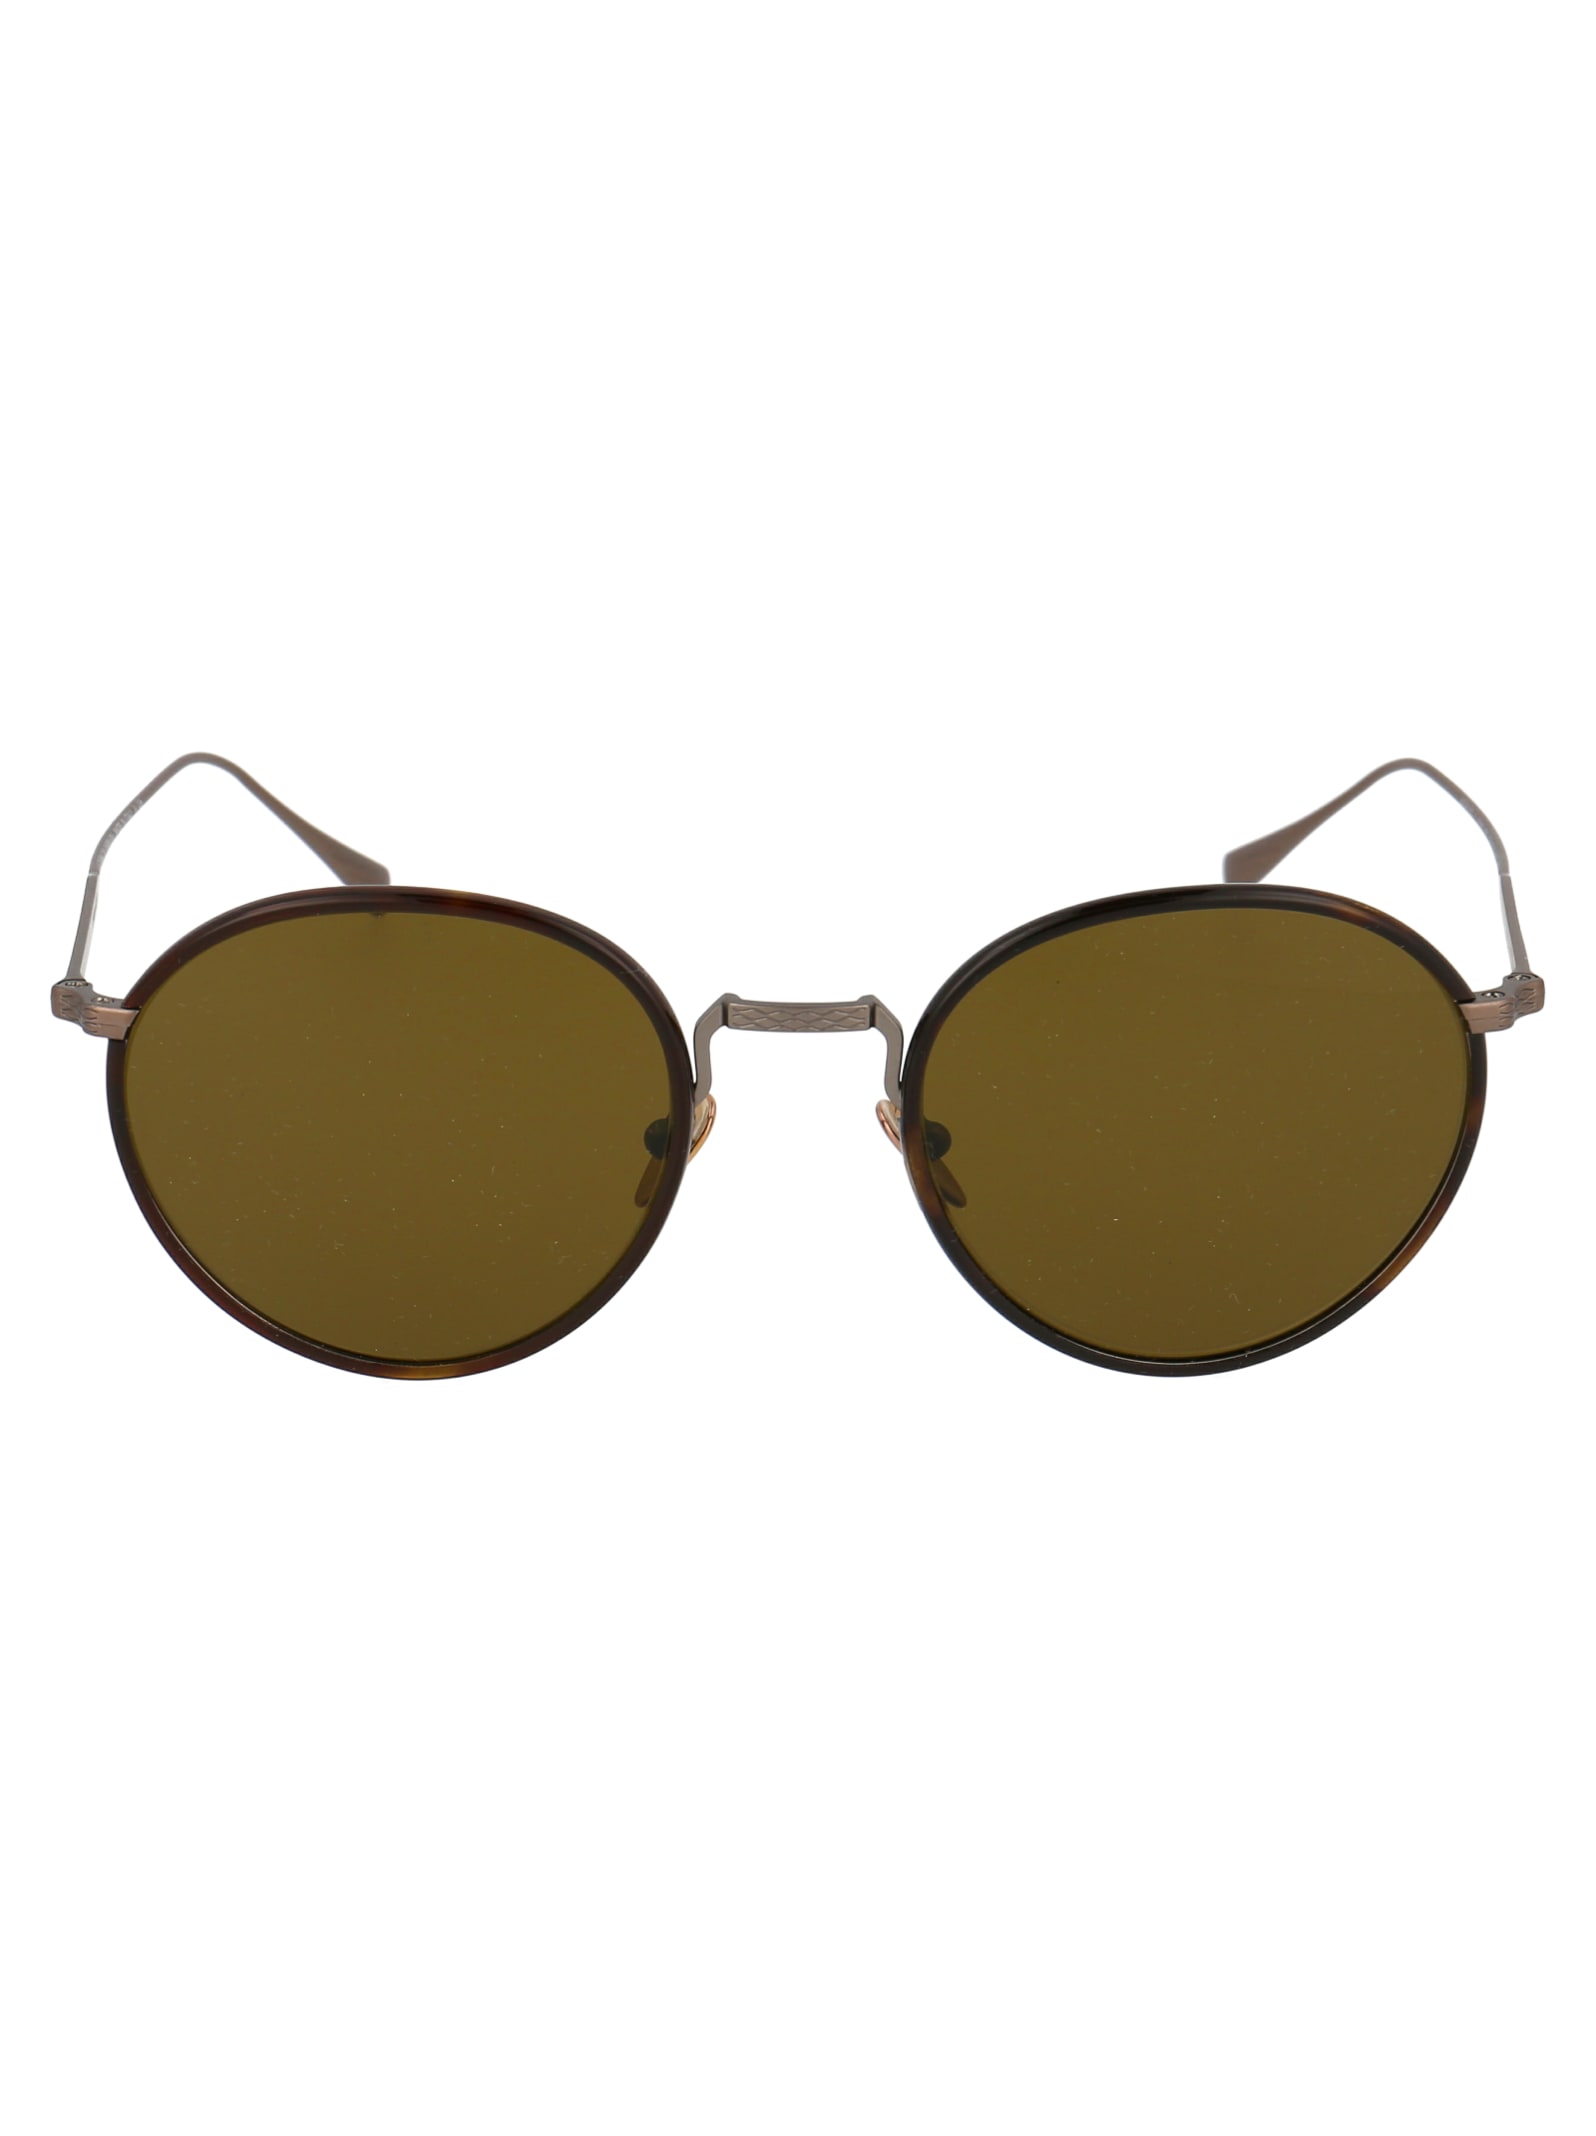 Giorgio Armani 0ar6103j Sunglasses In 300673 Moro Havana/bronze